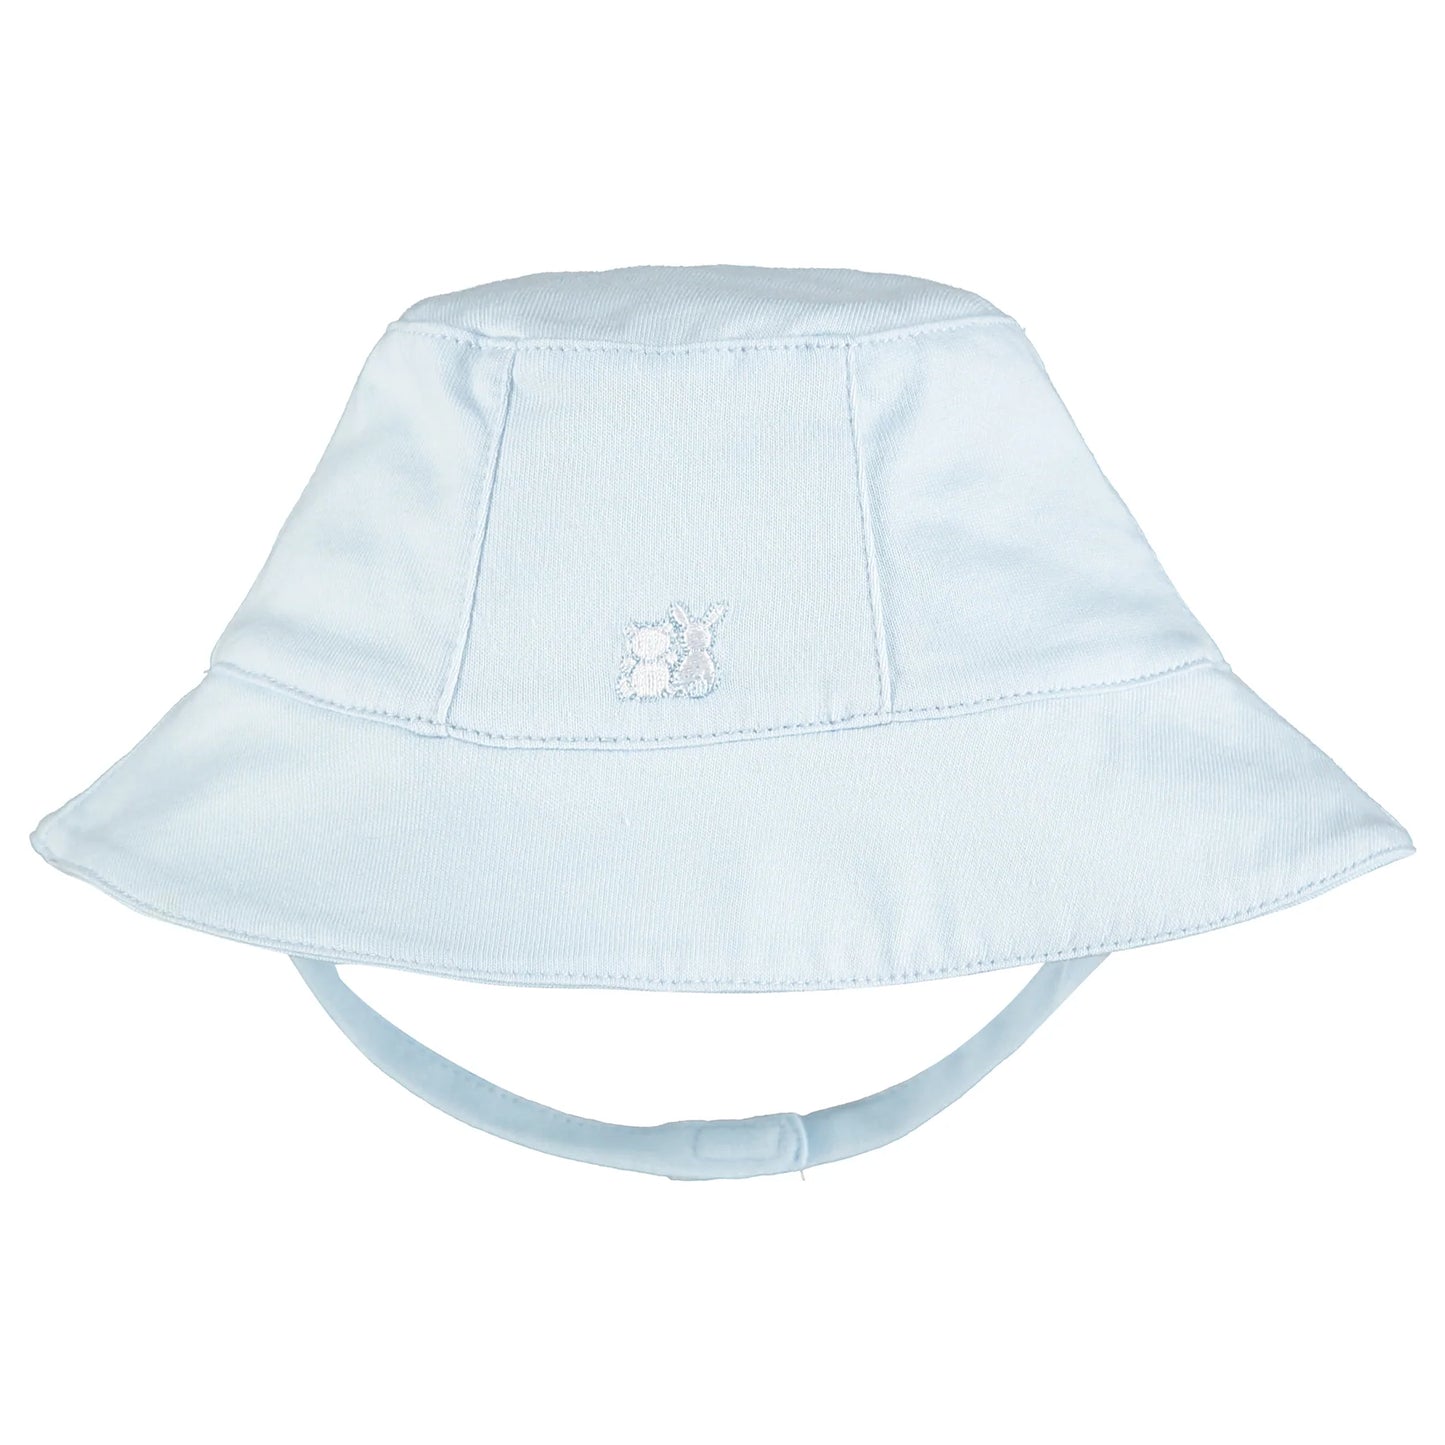 Emile et Rose Baby Boy's Pale Blue Embroidered Short Romper & Hat